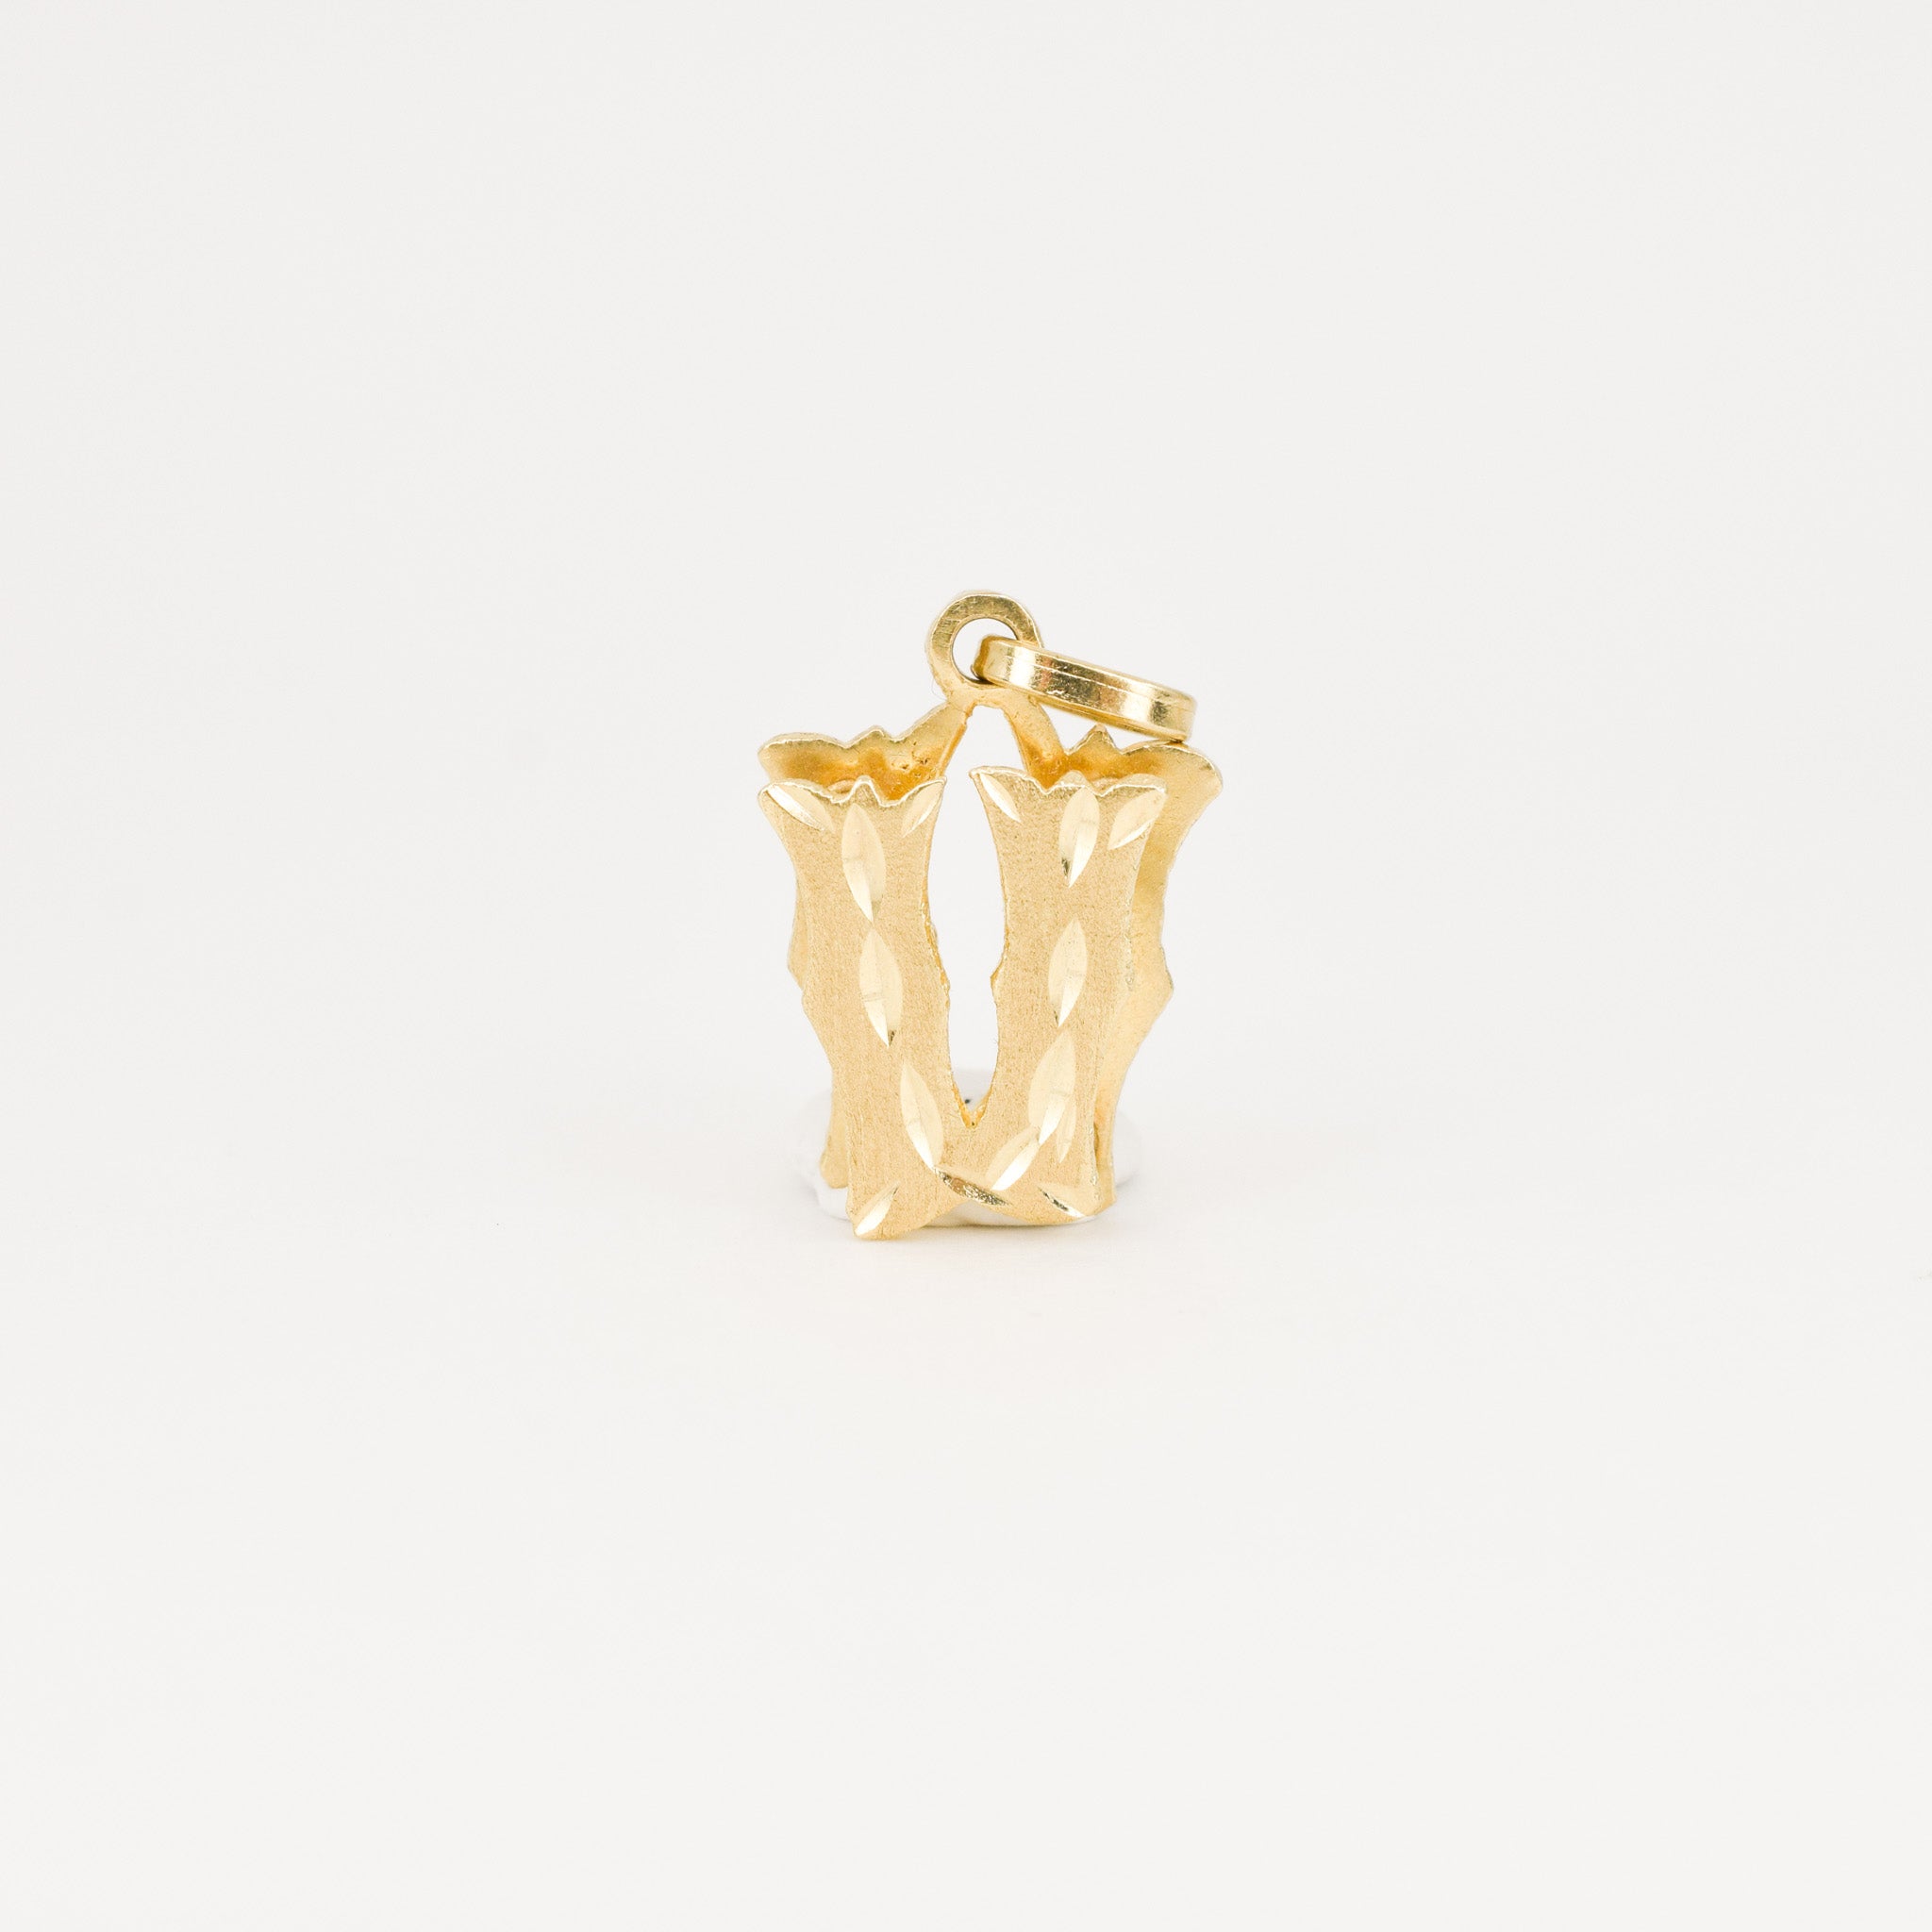 vintage 'v' gold charm pendant, folklor vintage jewelry canada